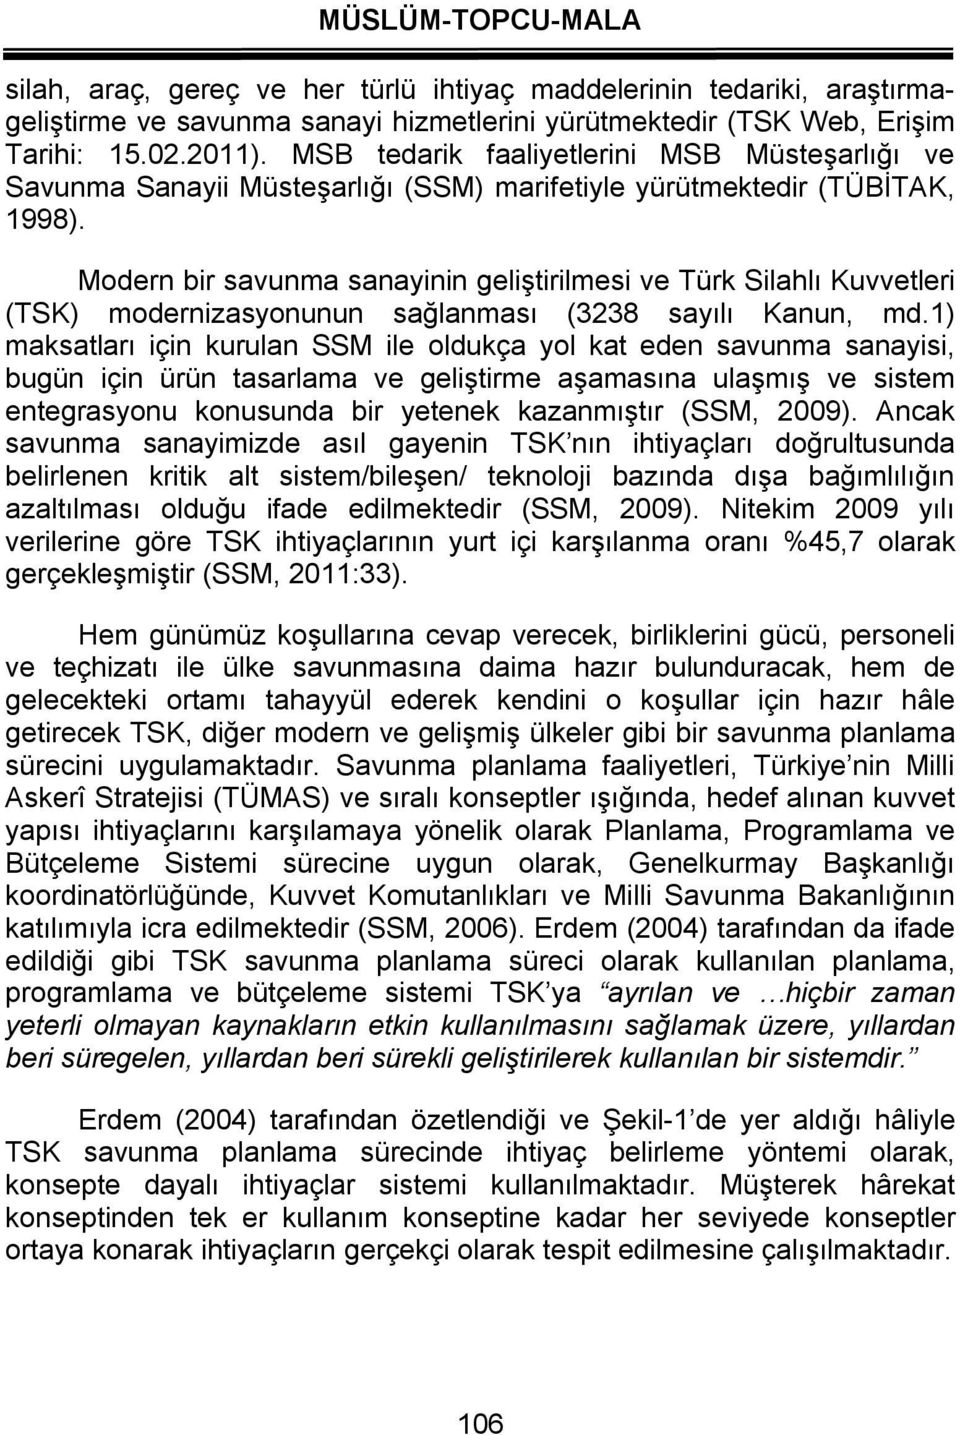 Modern bir savunma sanayinin geliştirilmesi ve Türk Silahlı Kuvvetleri (TSK) modernizasyonunun sağlanması (3238 sayılı Kanun, md.